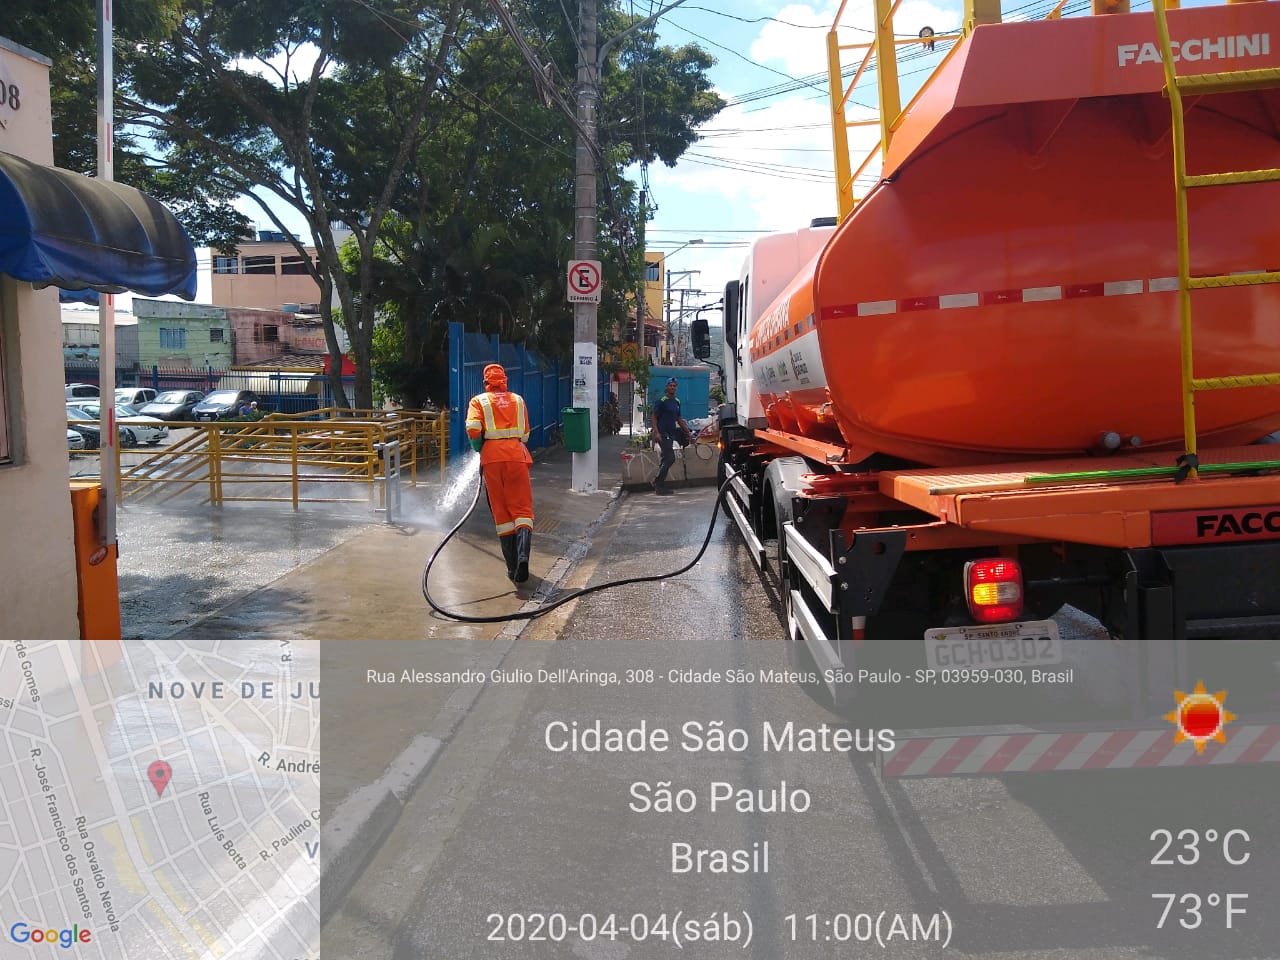 Caminhão com tanque laranja está parado e trabalhador lança jatos de água na calçada.